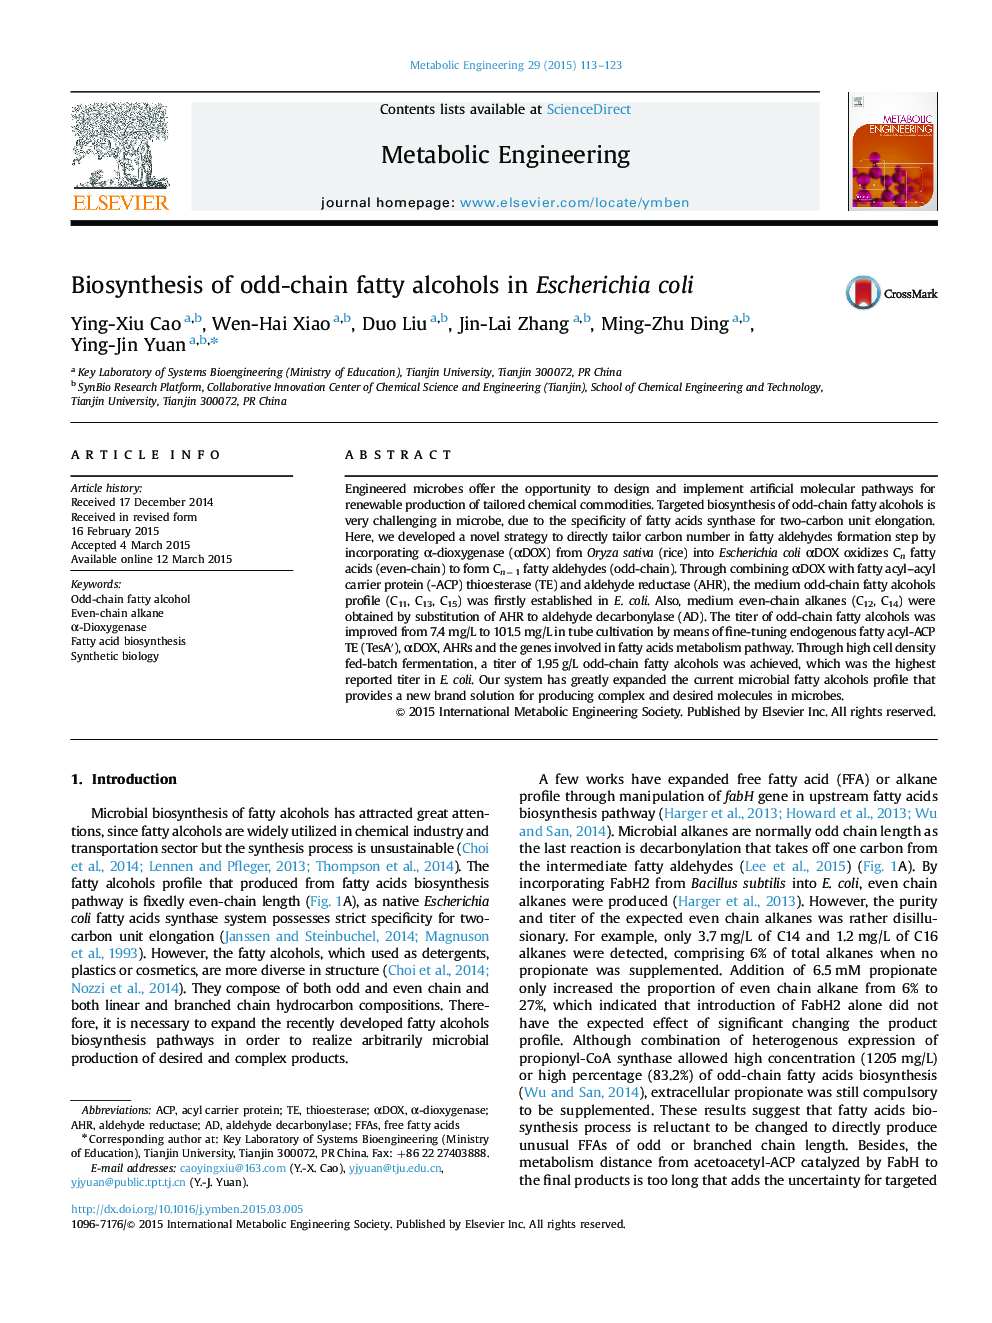 Biosynthesis of odd-chain fatty alcohols in Escherichia coli